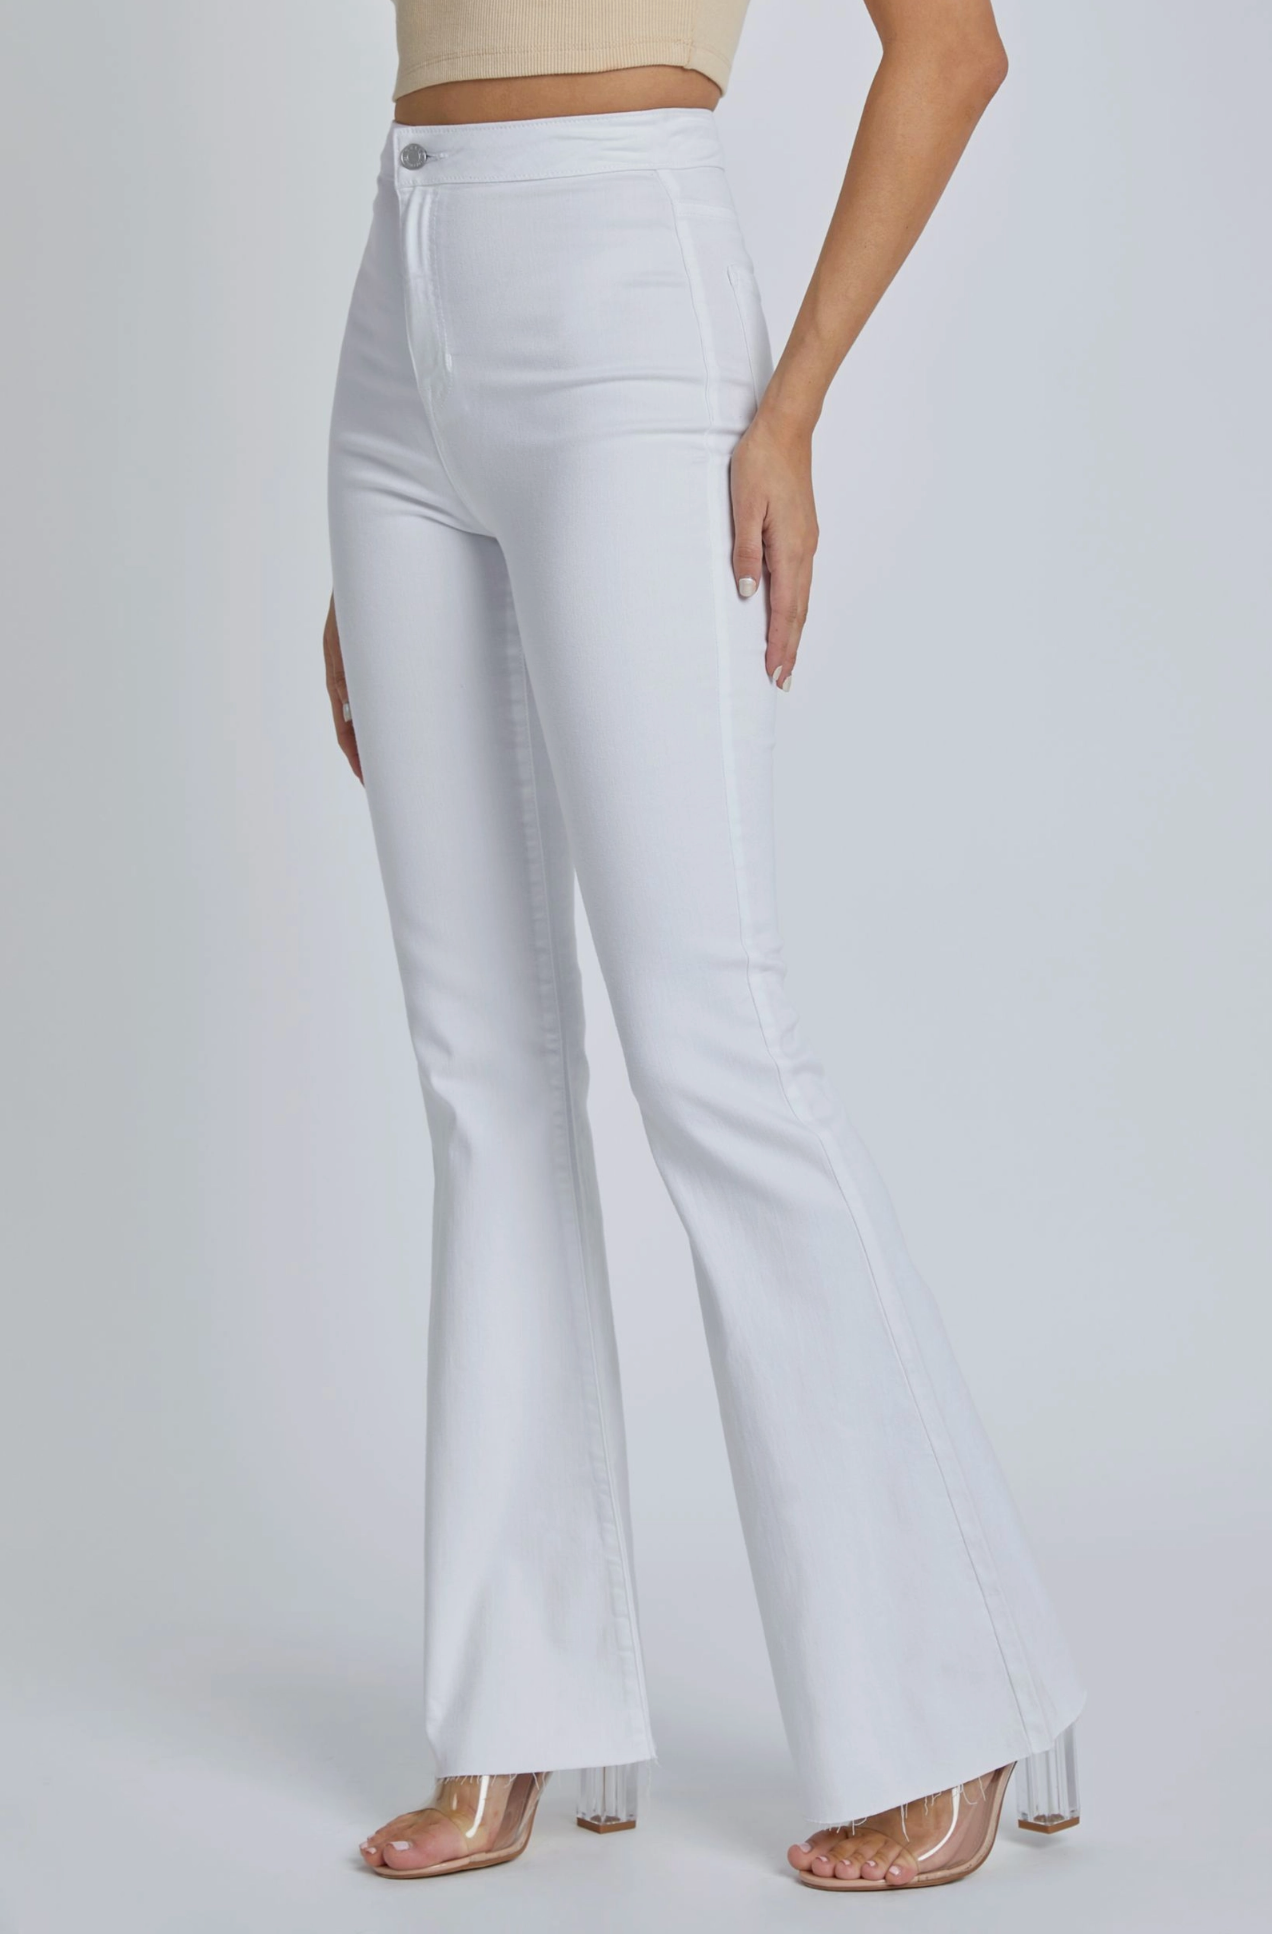 Super Flare White Jean